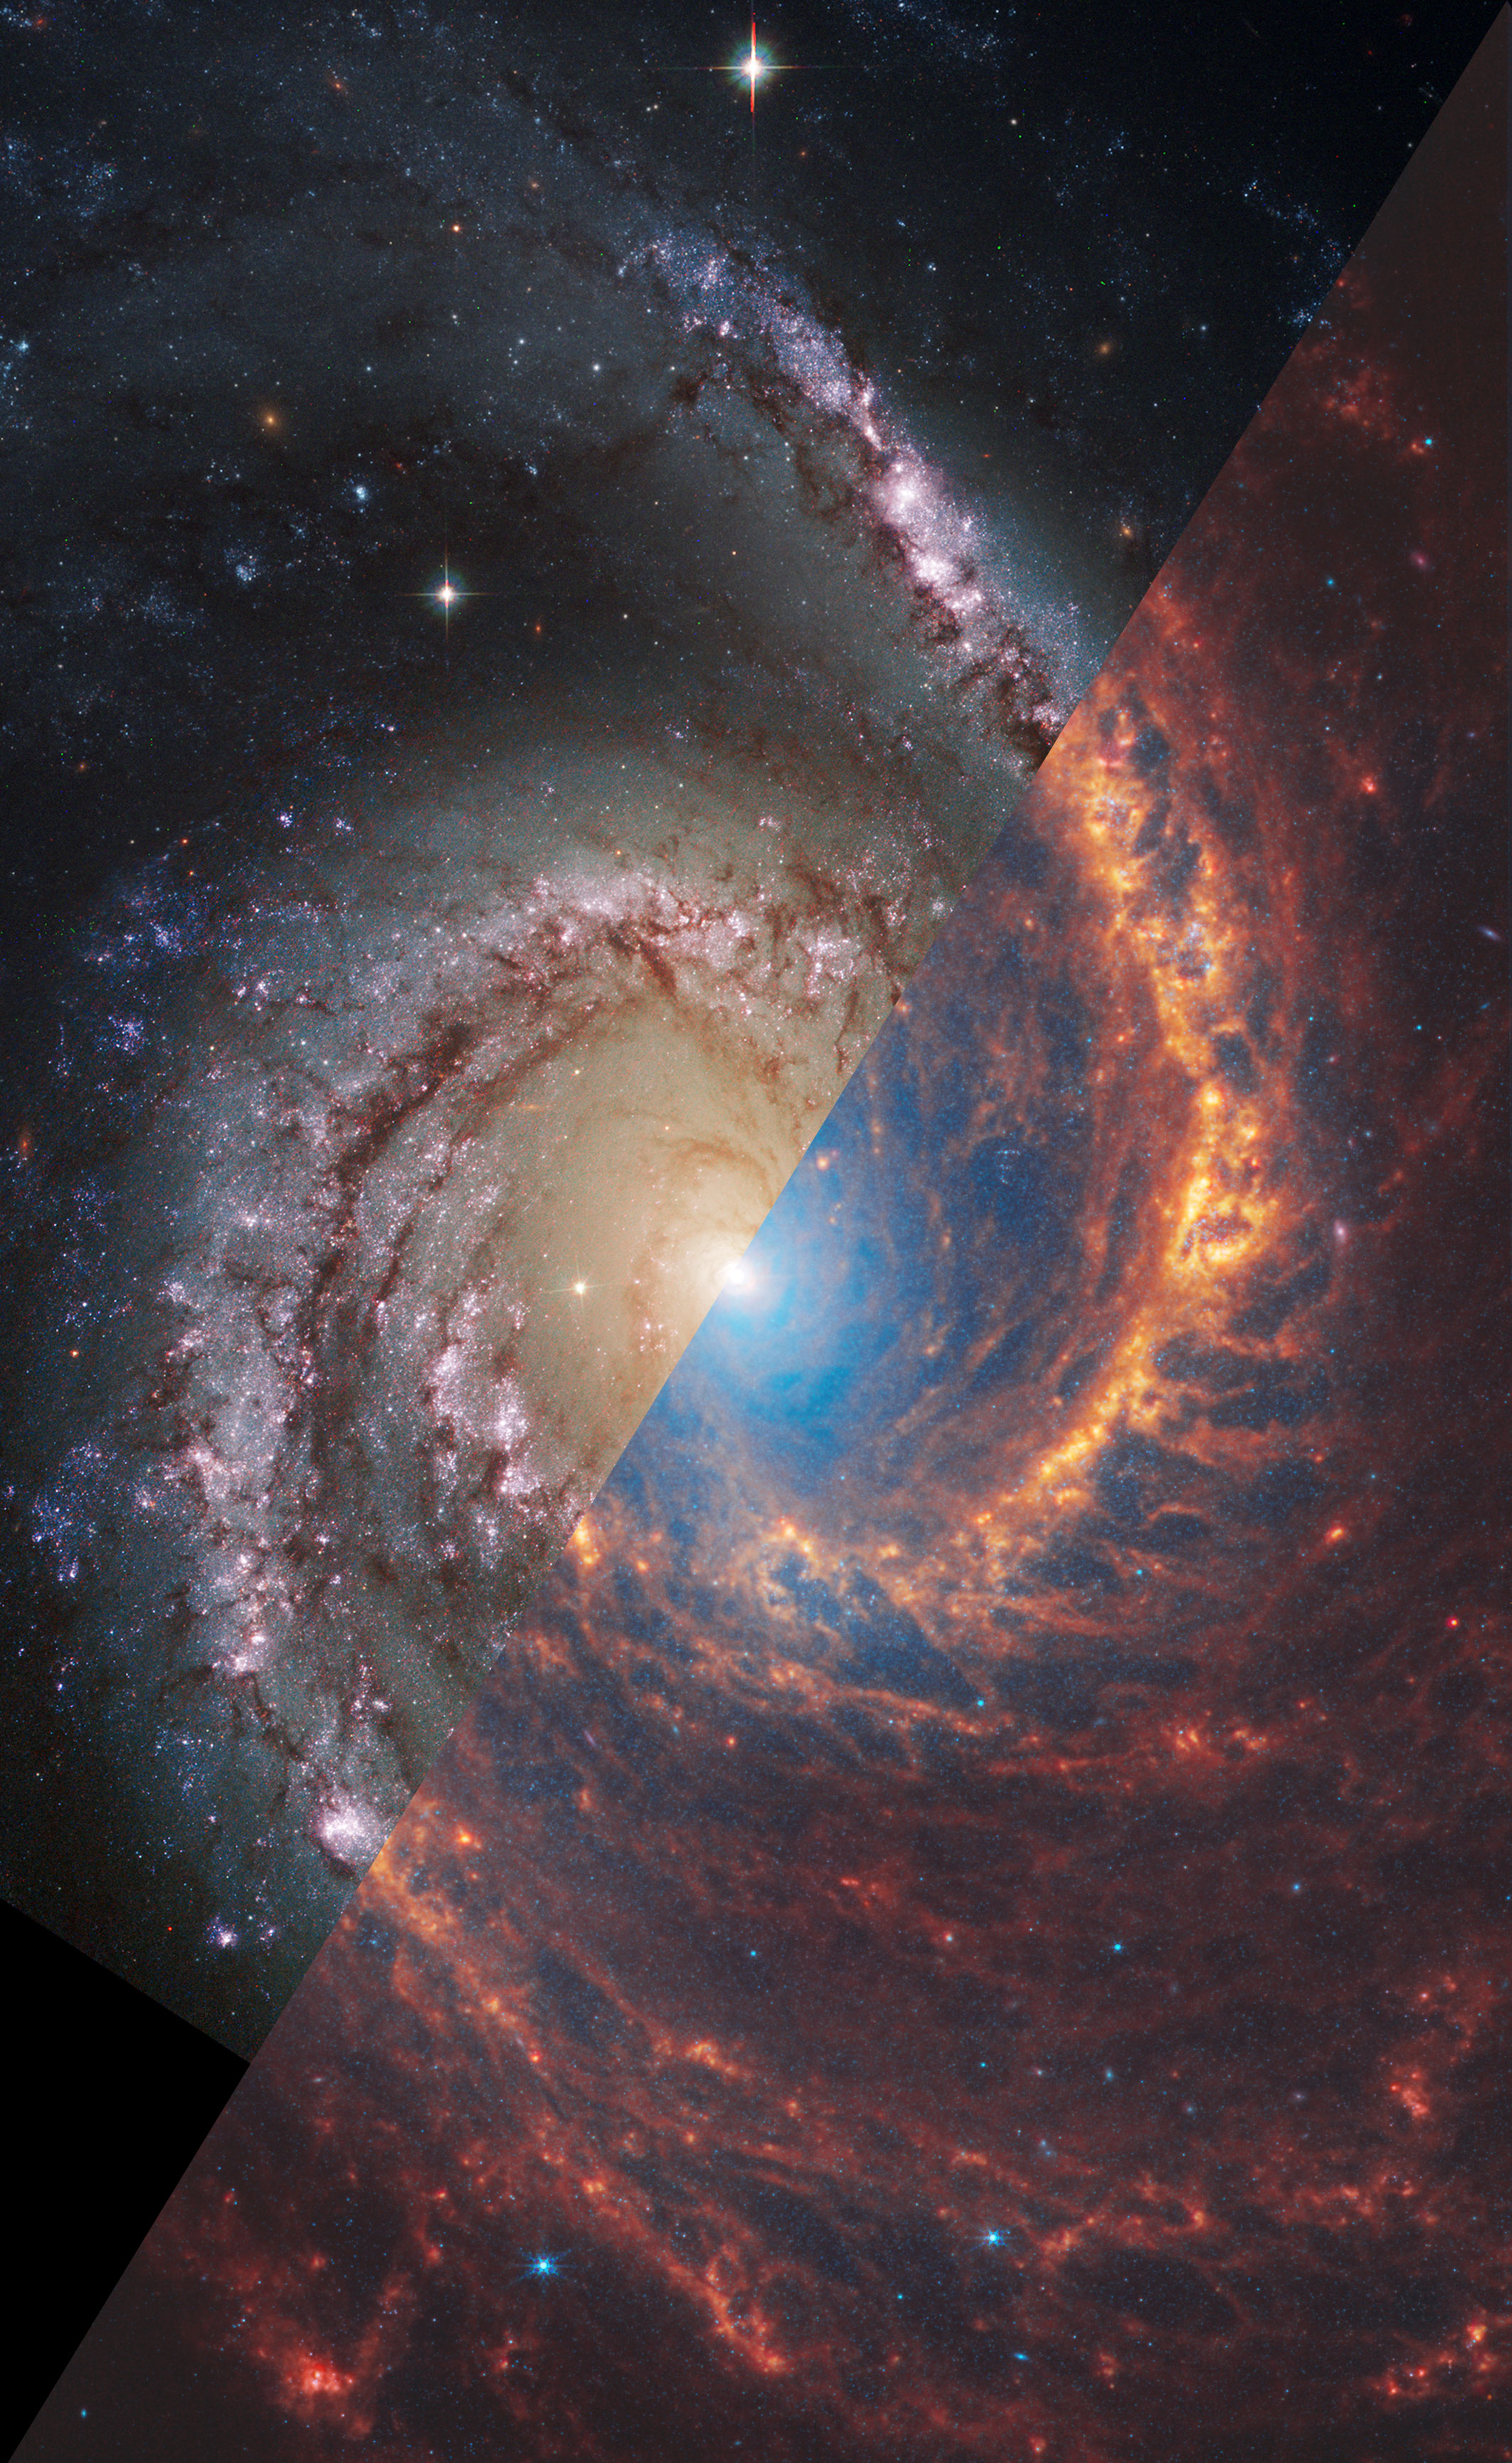   NGC 1566   ""  " "